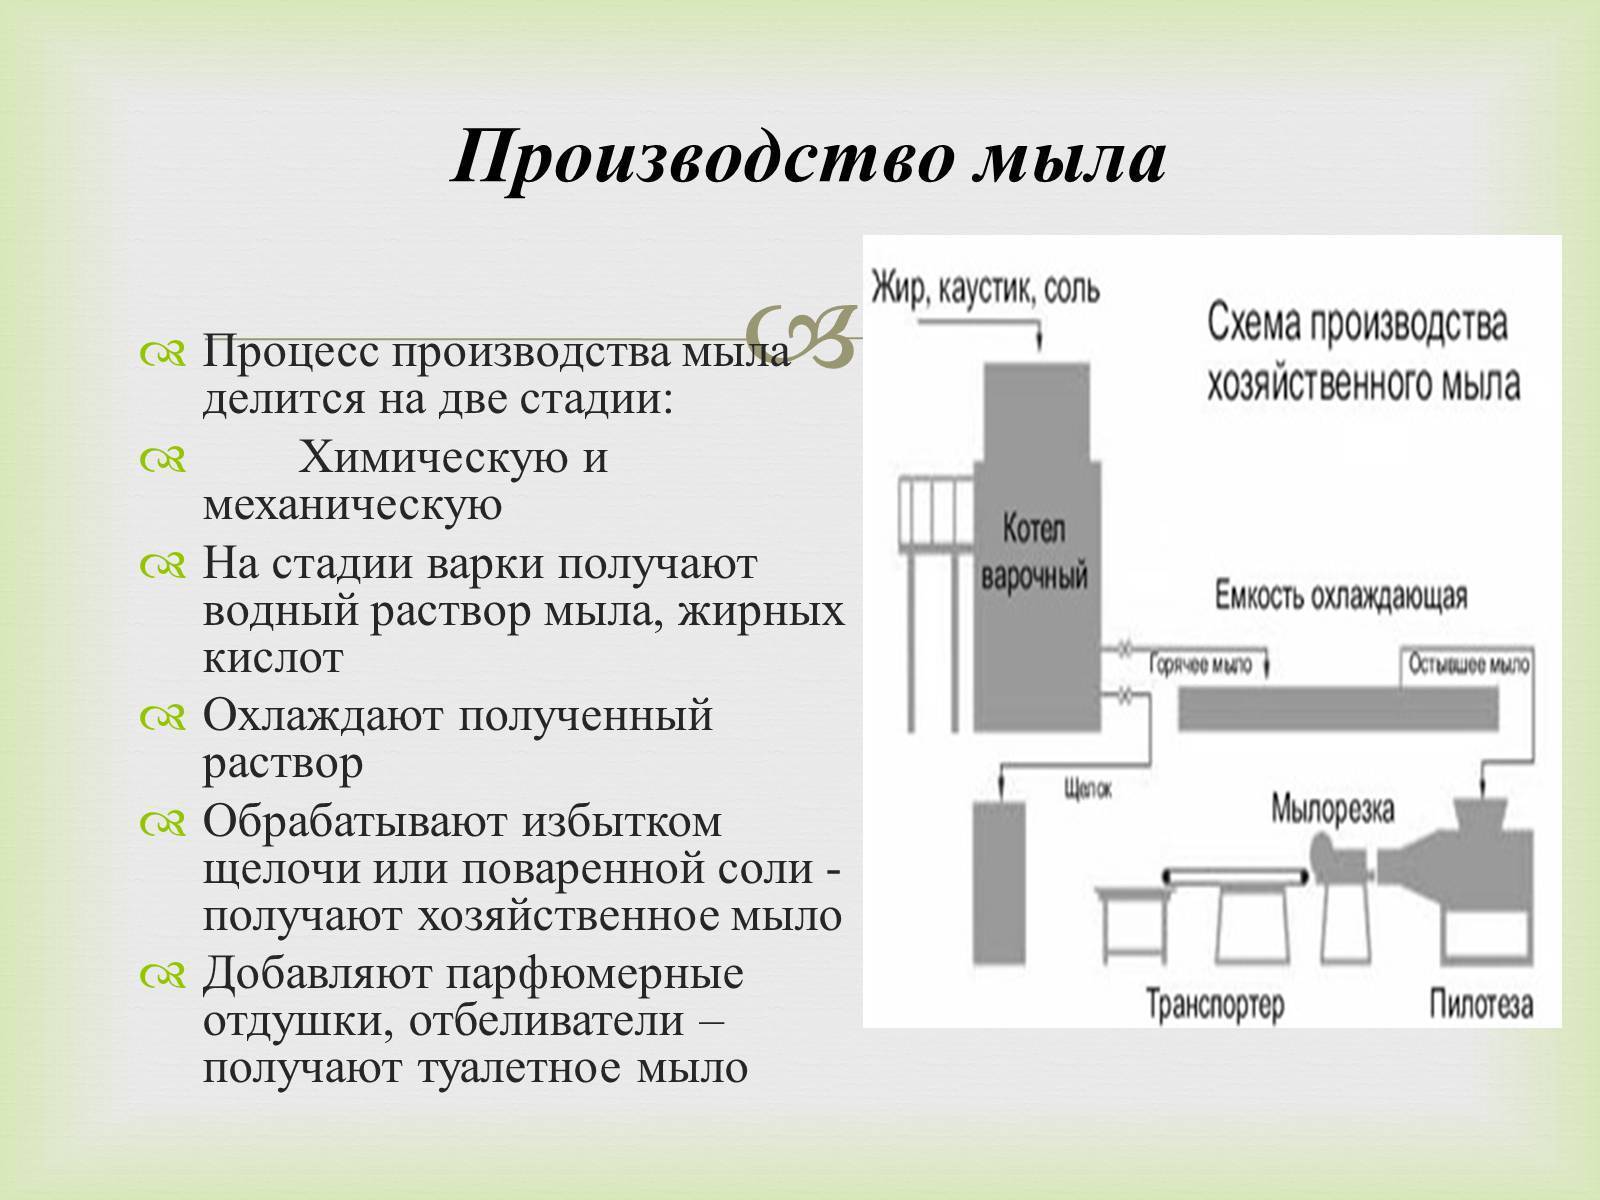 Схема производства хозяйственного мыла